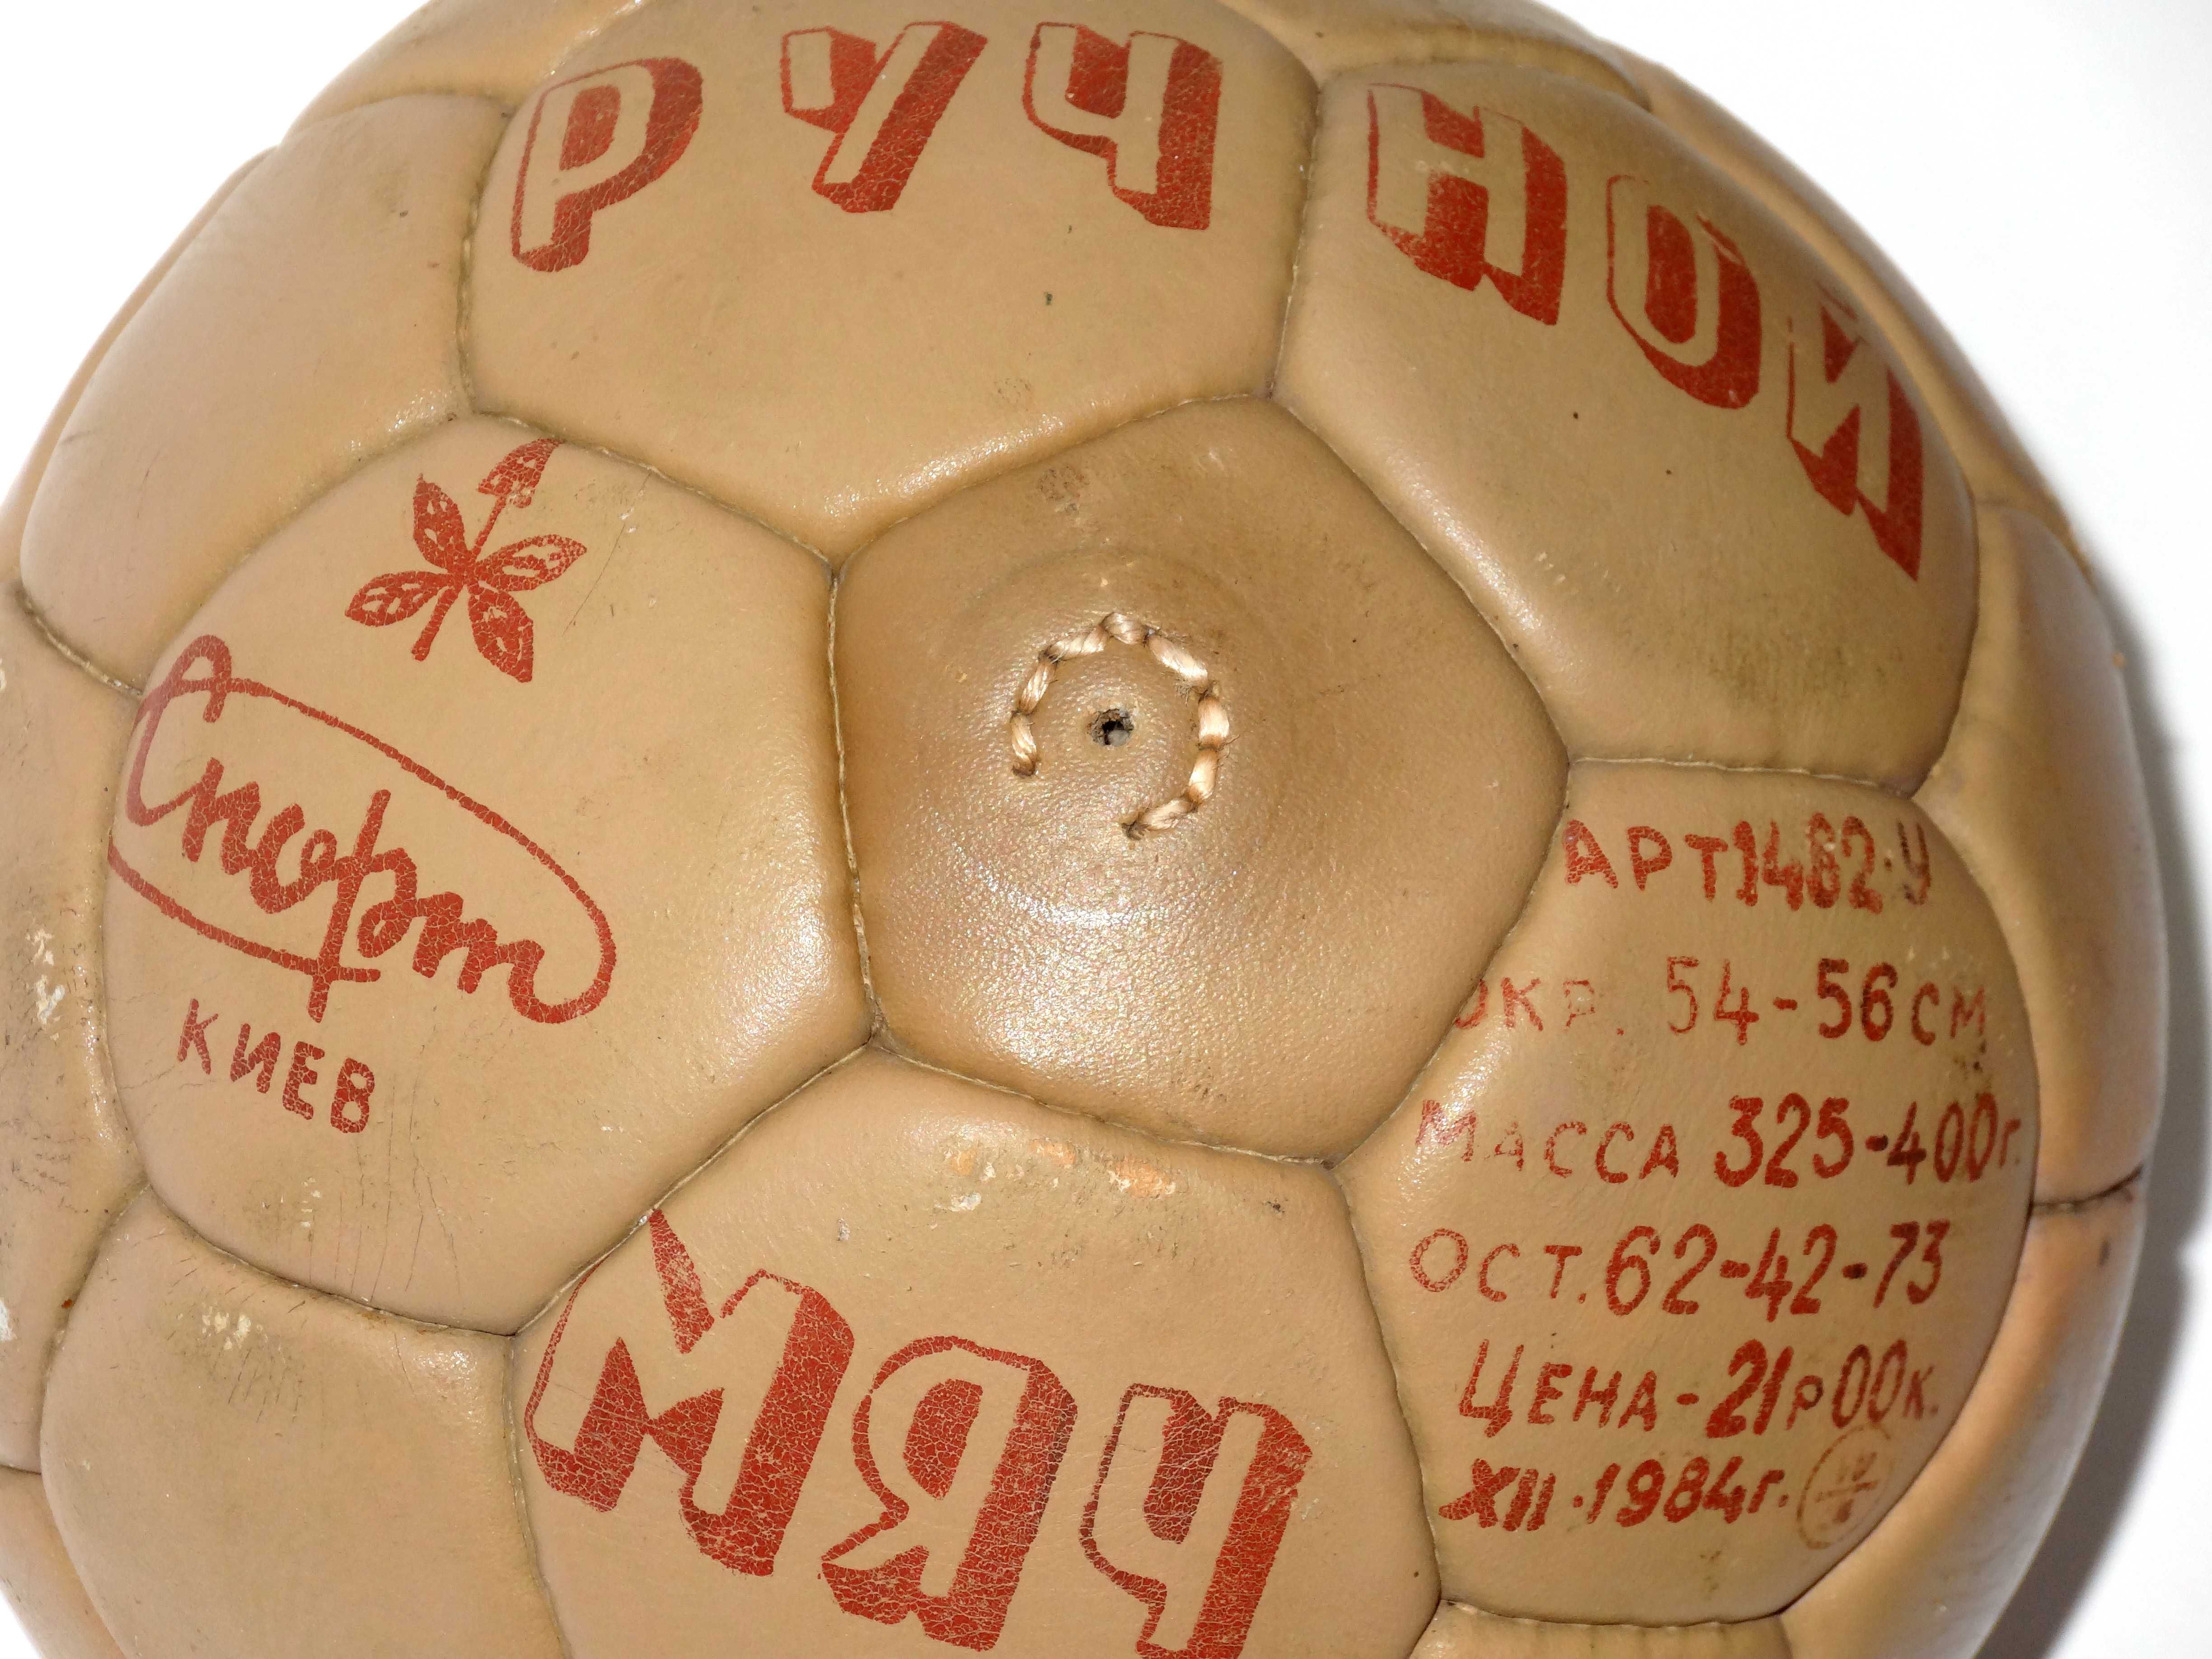 Оригинальный мяч "Киев" | Натуральная кожа /54-56см./400 гр./ 1984 г.